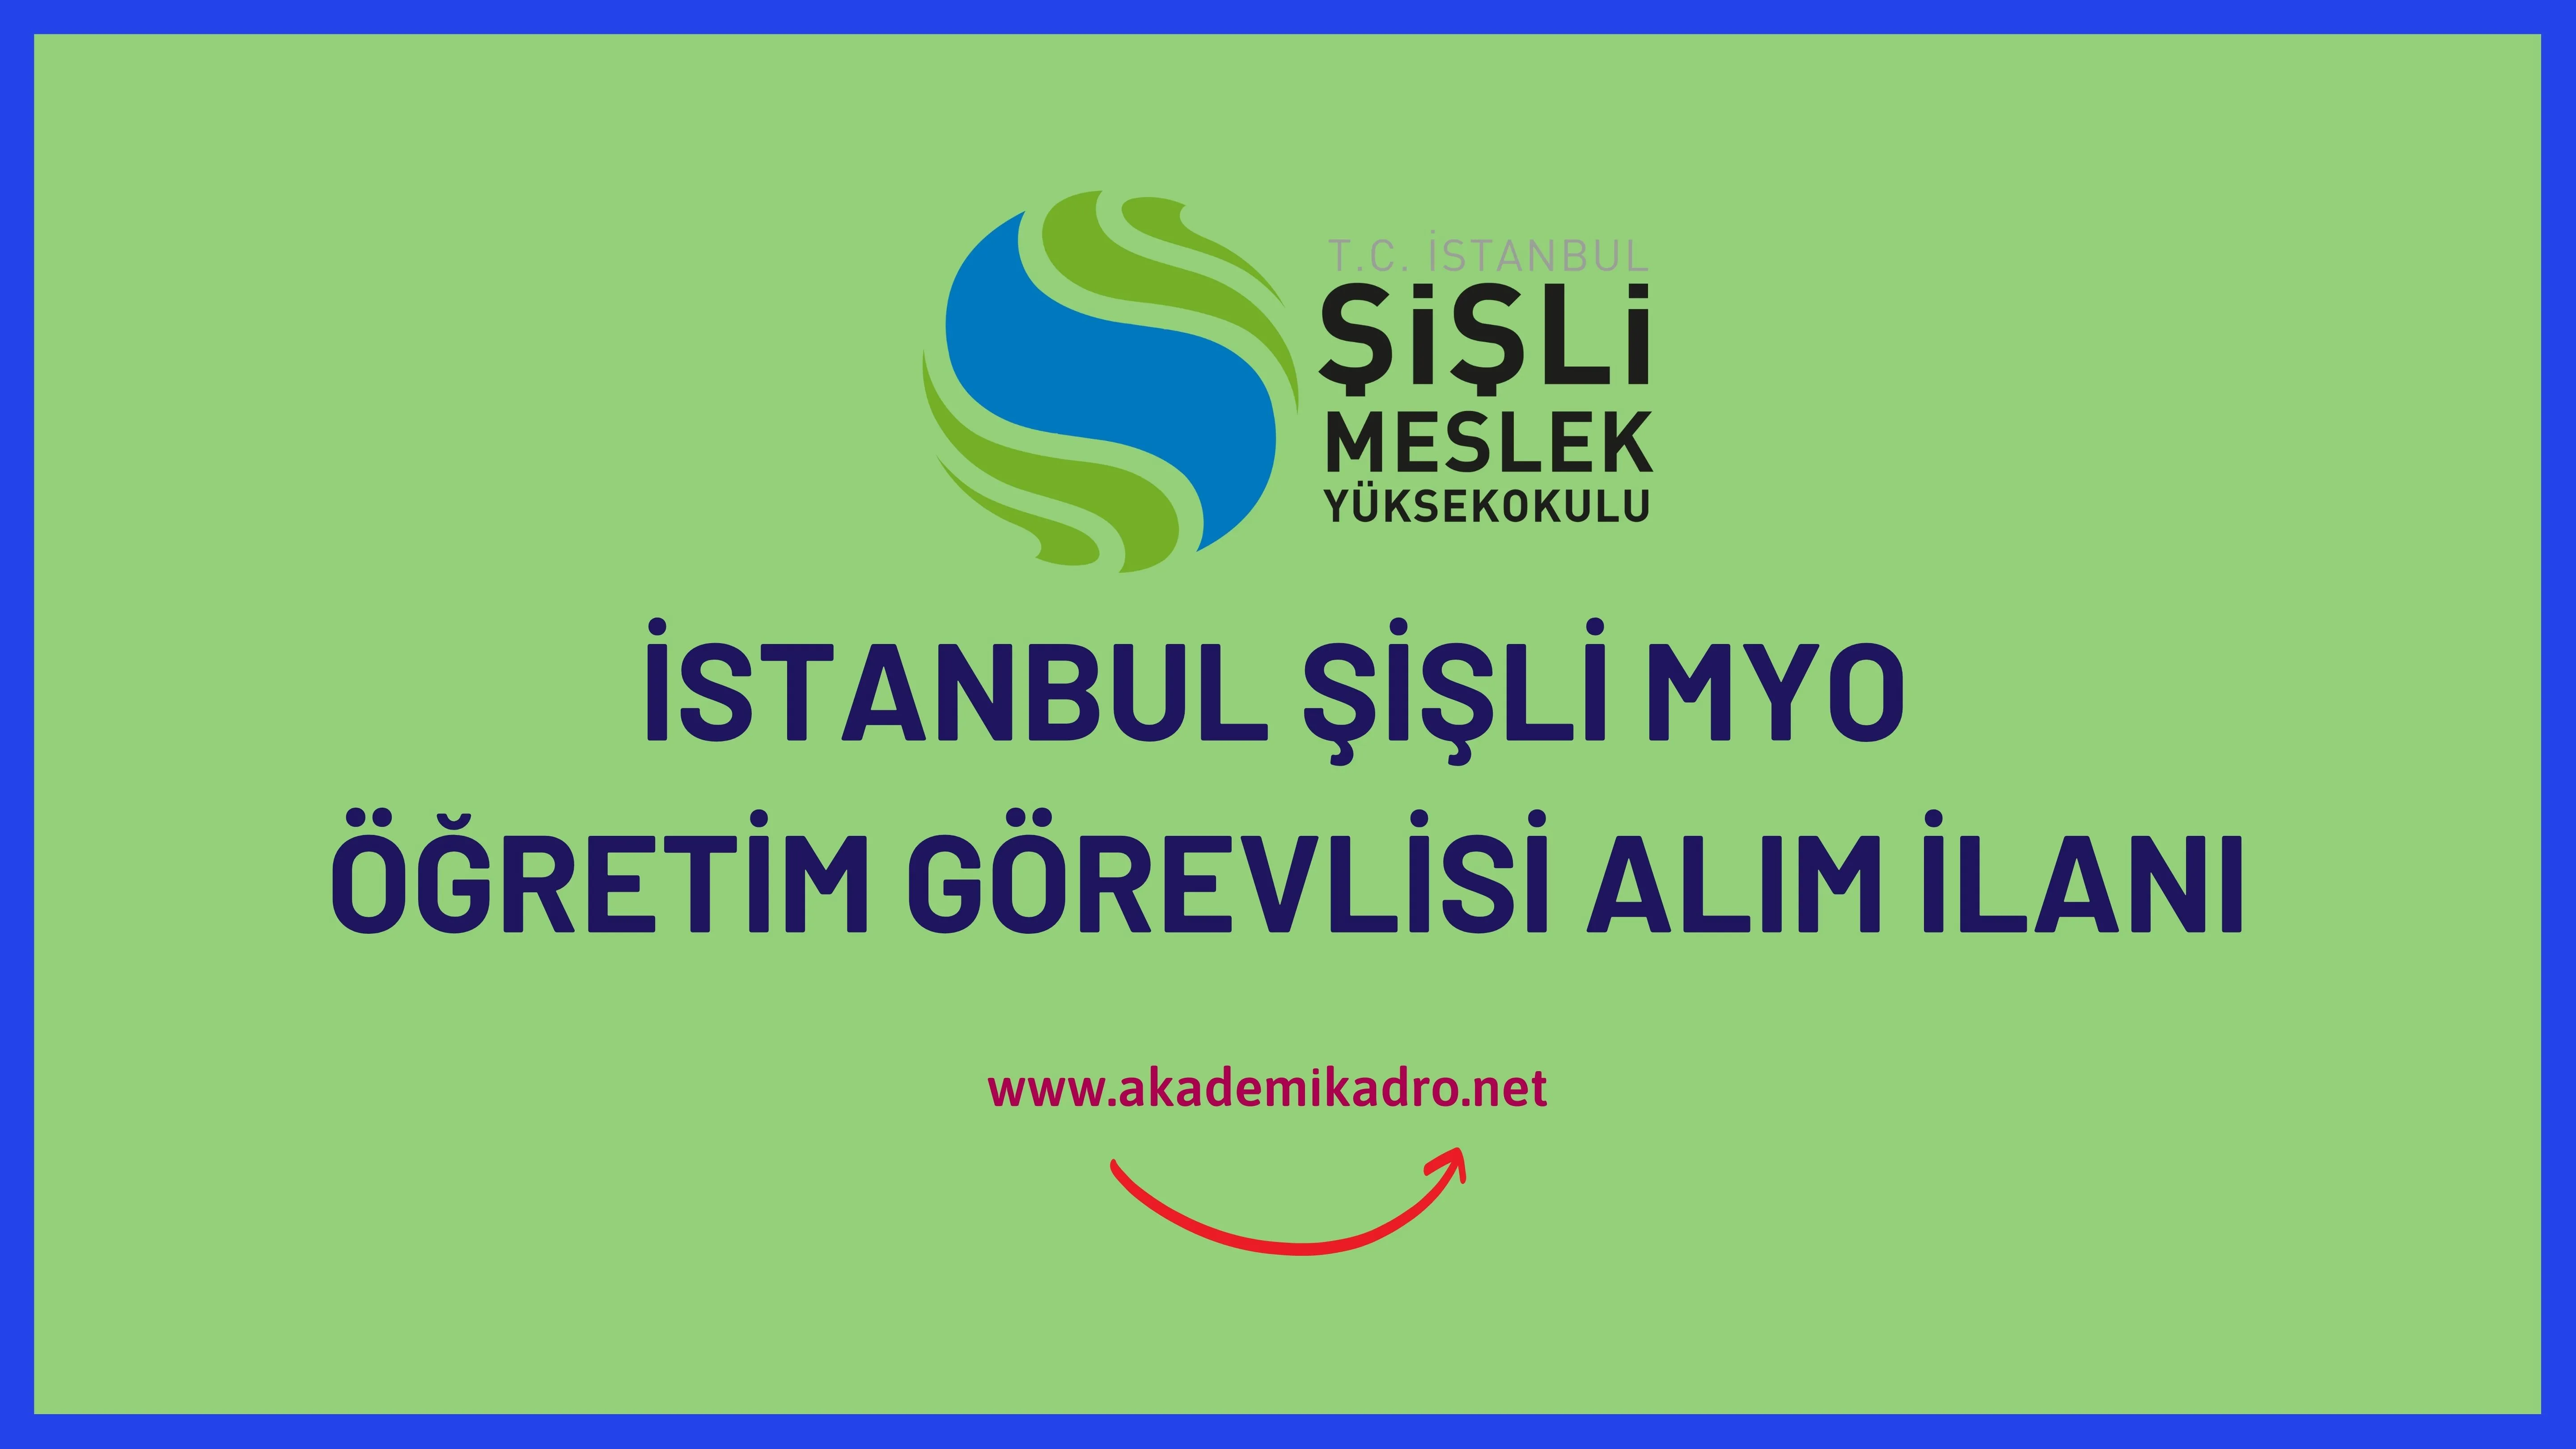 İstanbul Şişli Meslek Yüksekokulu Öğretim Görevlisi alacaktır. Son başvuru tarihi 28 Mart 2023